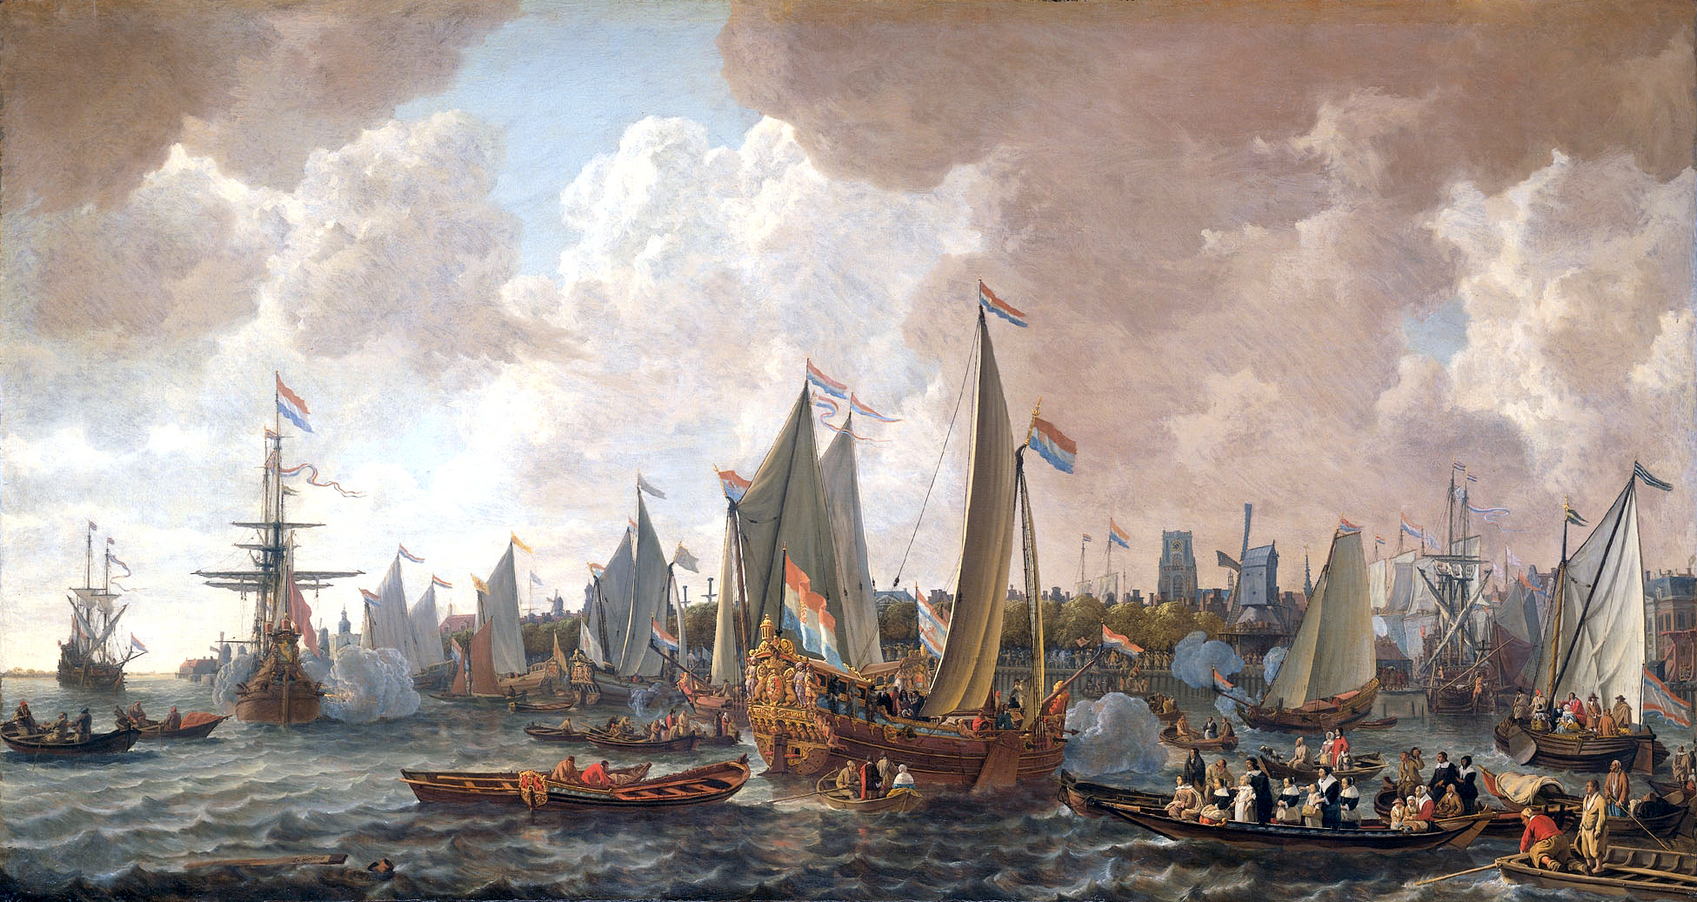 A II. Károlyt szállító hajó megérkezik Rotterdamba.